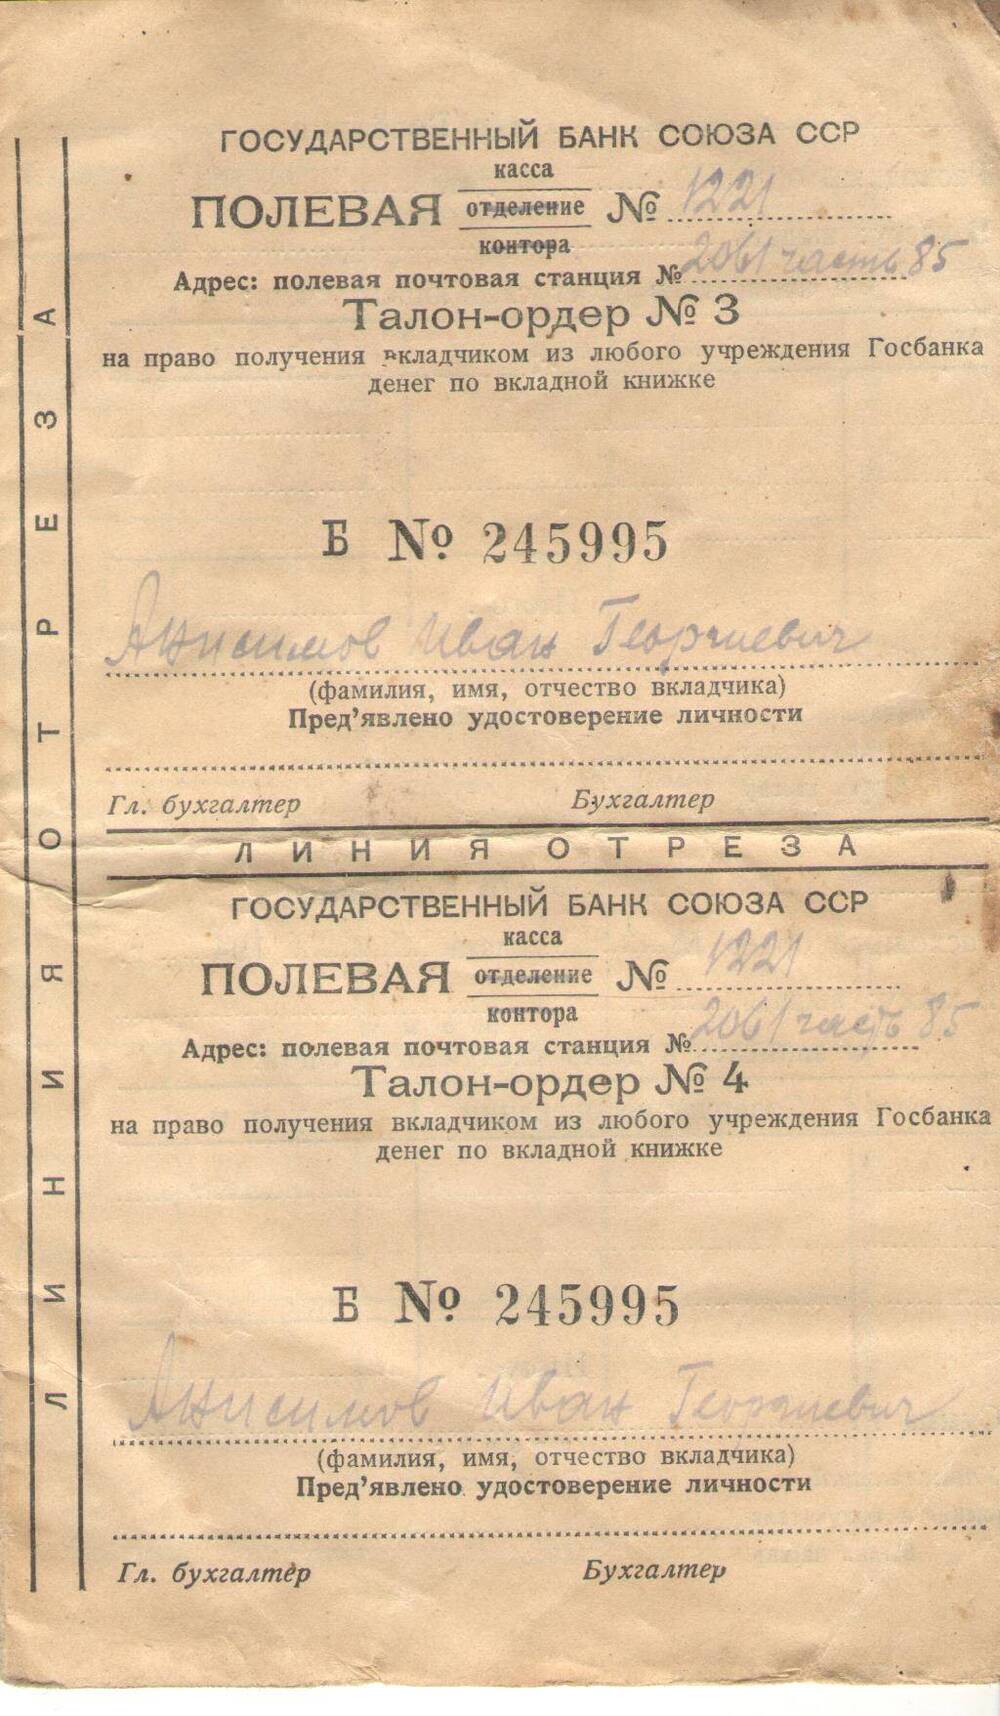 Талон-орден № 1 Б № 245995 Анисимов Иван Георгиевича